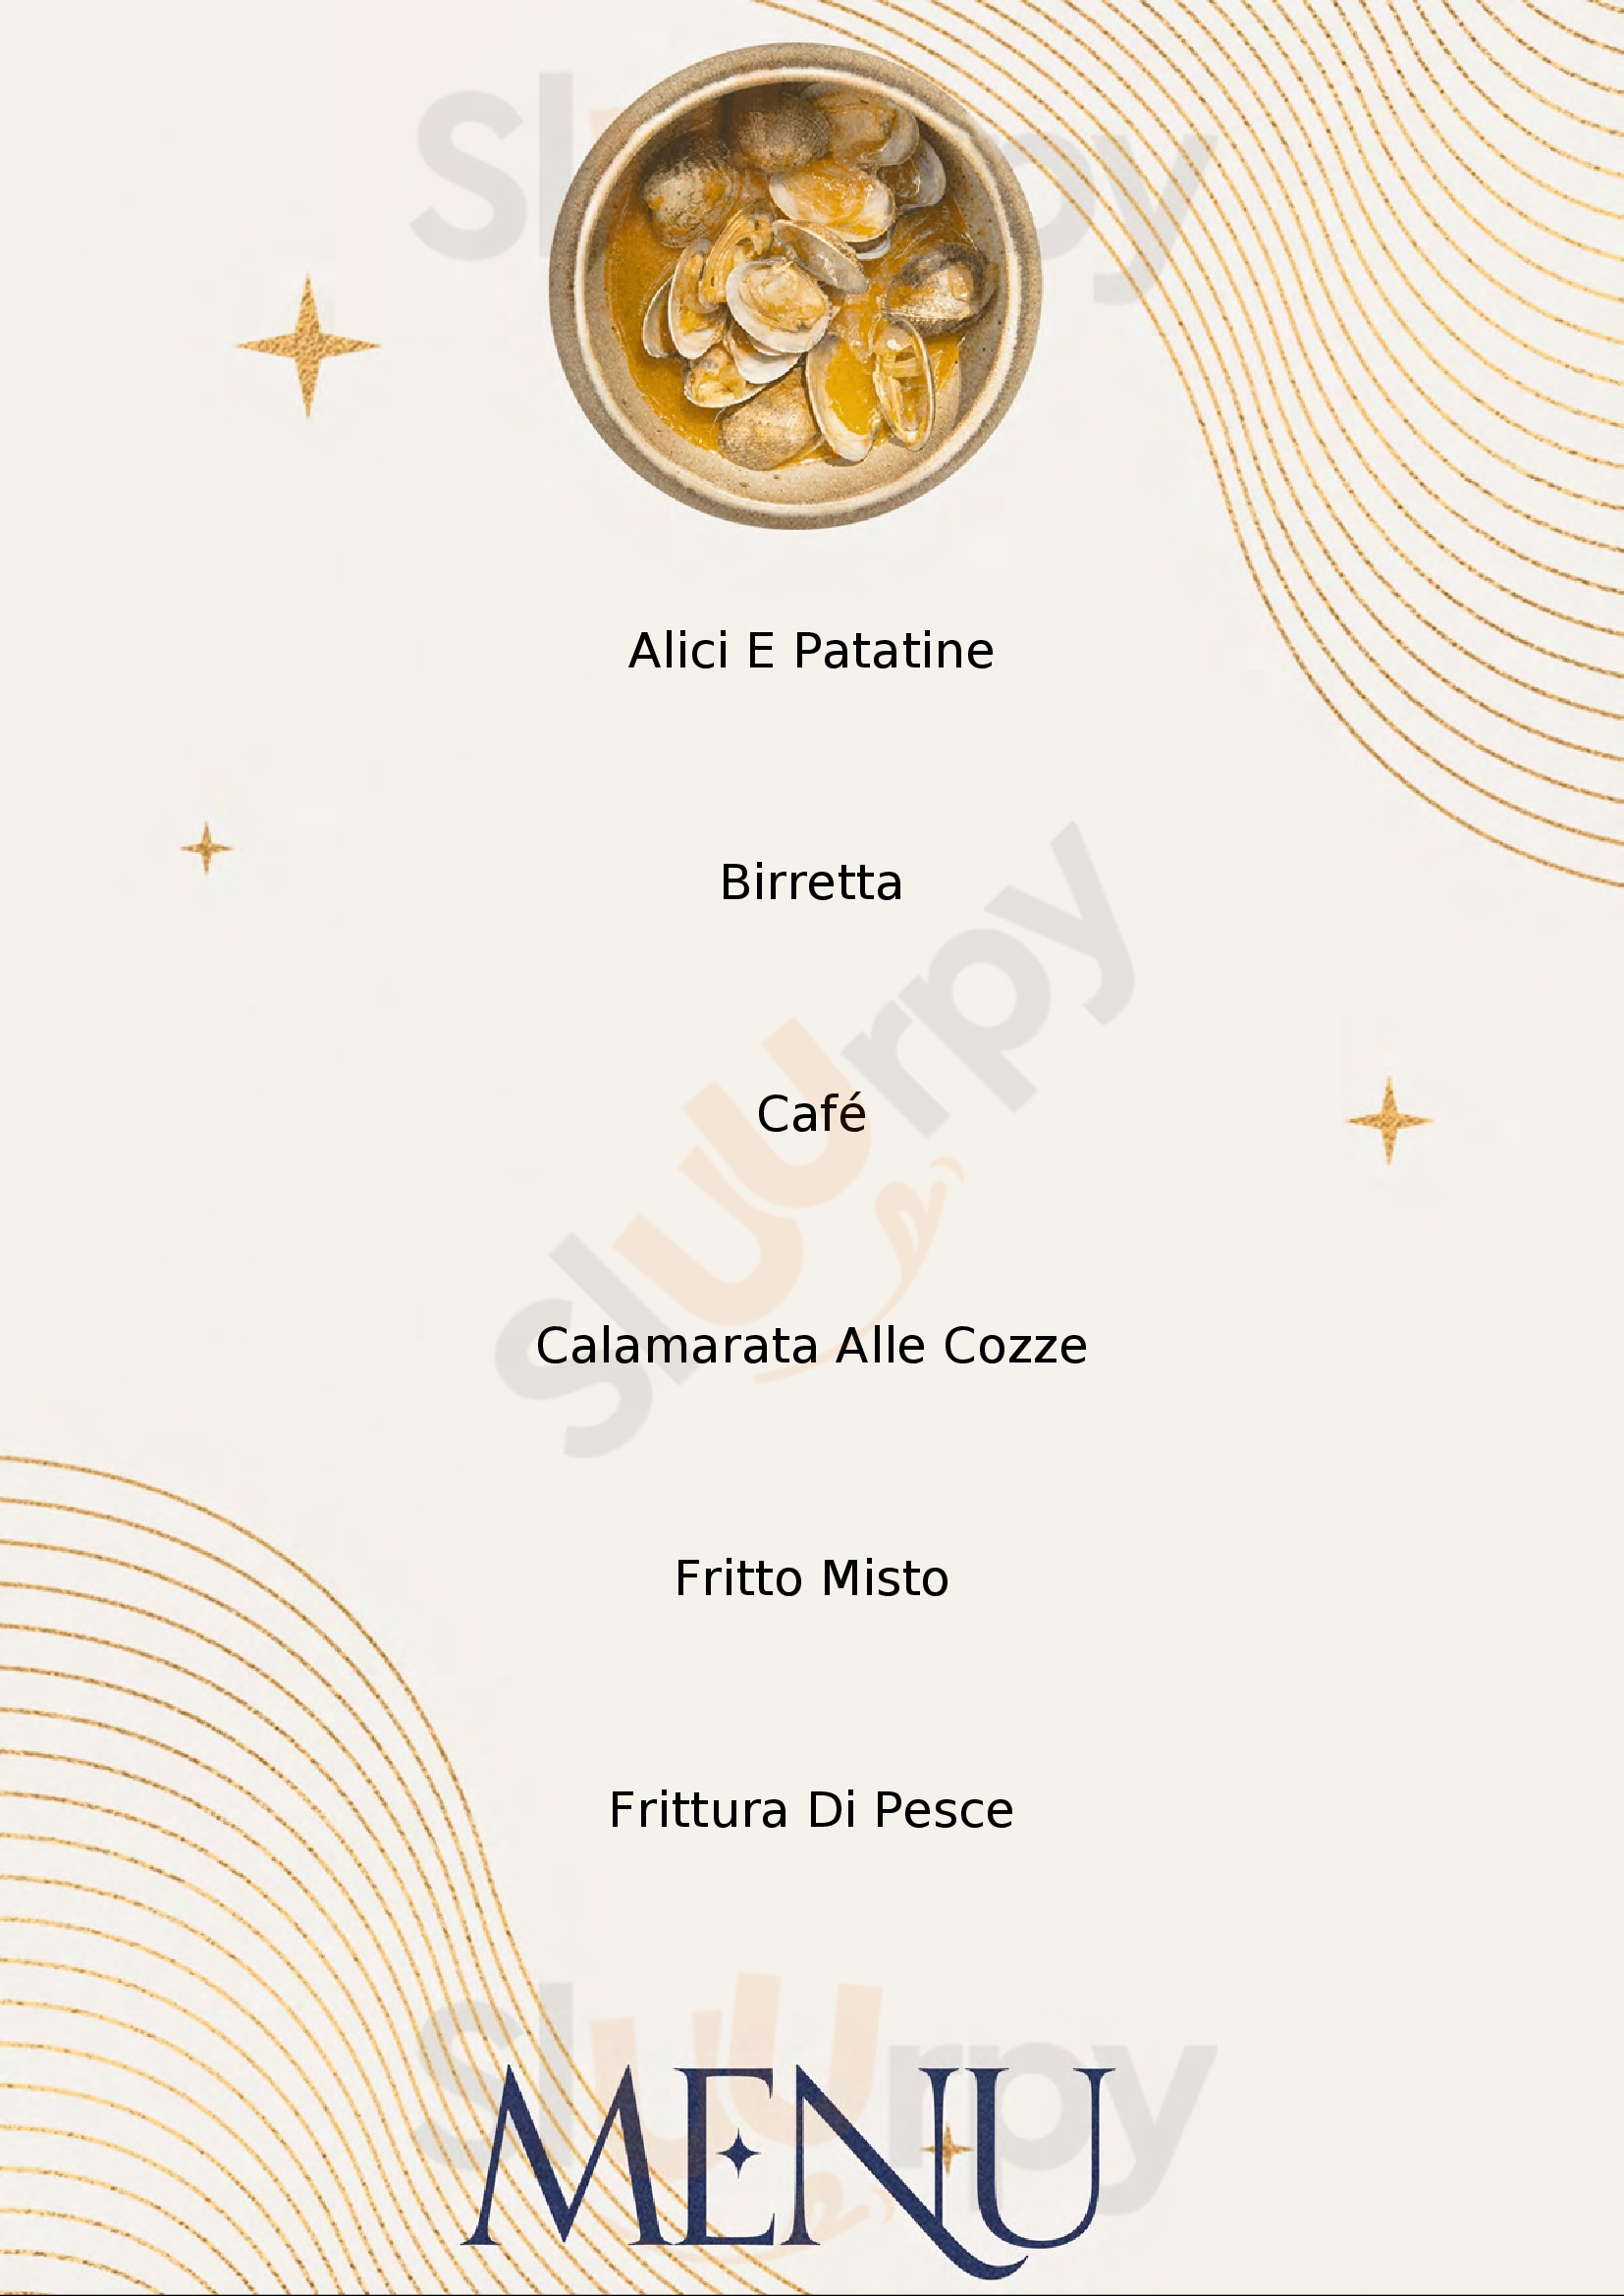 Giardino Caffe-Pizzeria-Ristorante Carrara menù 1 pagina